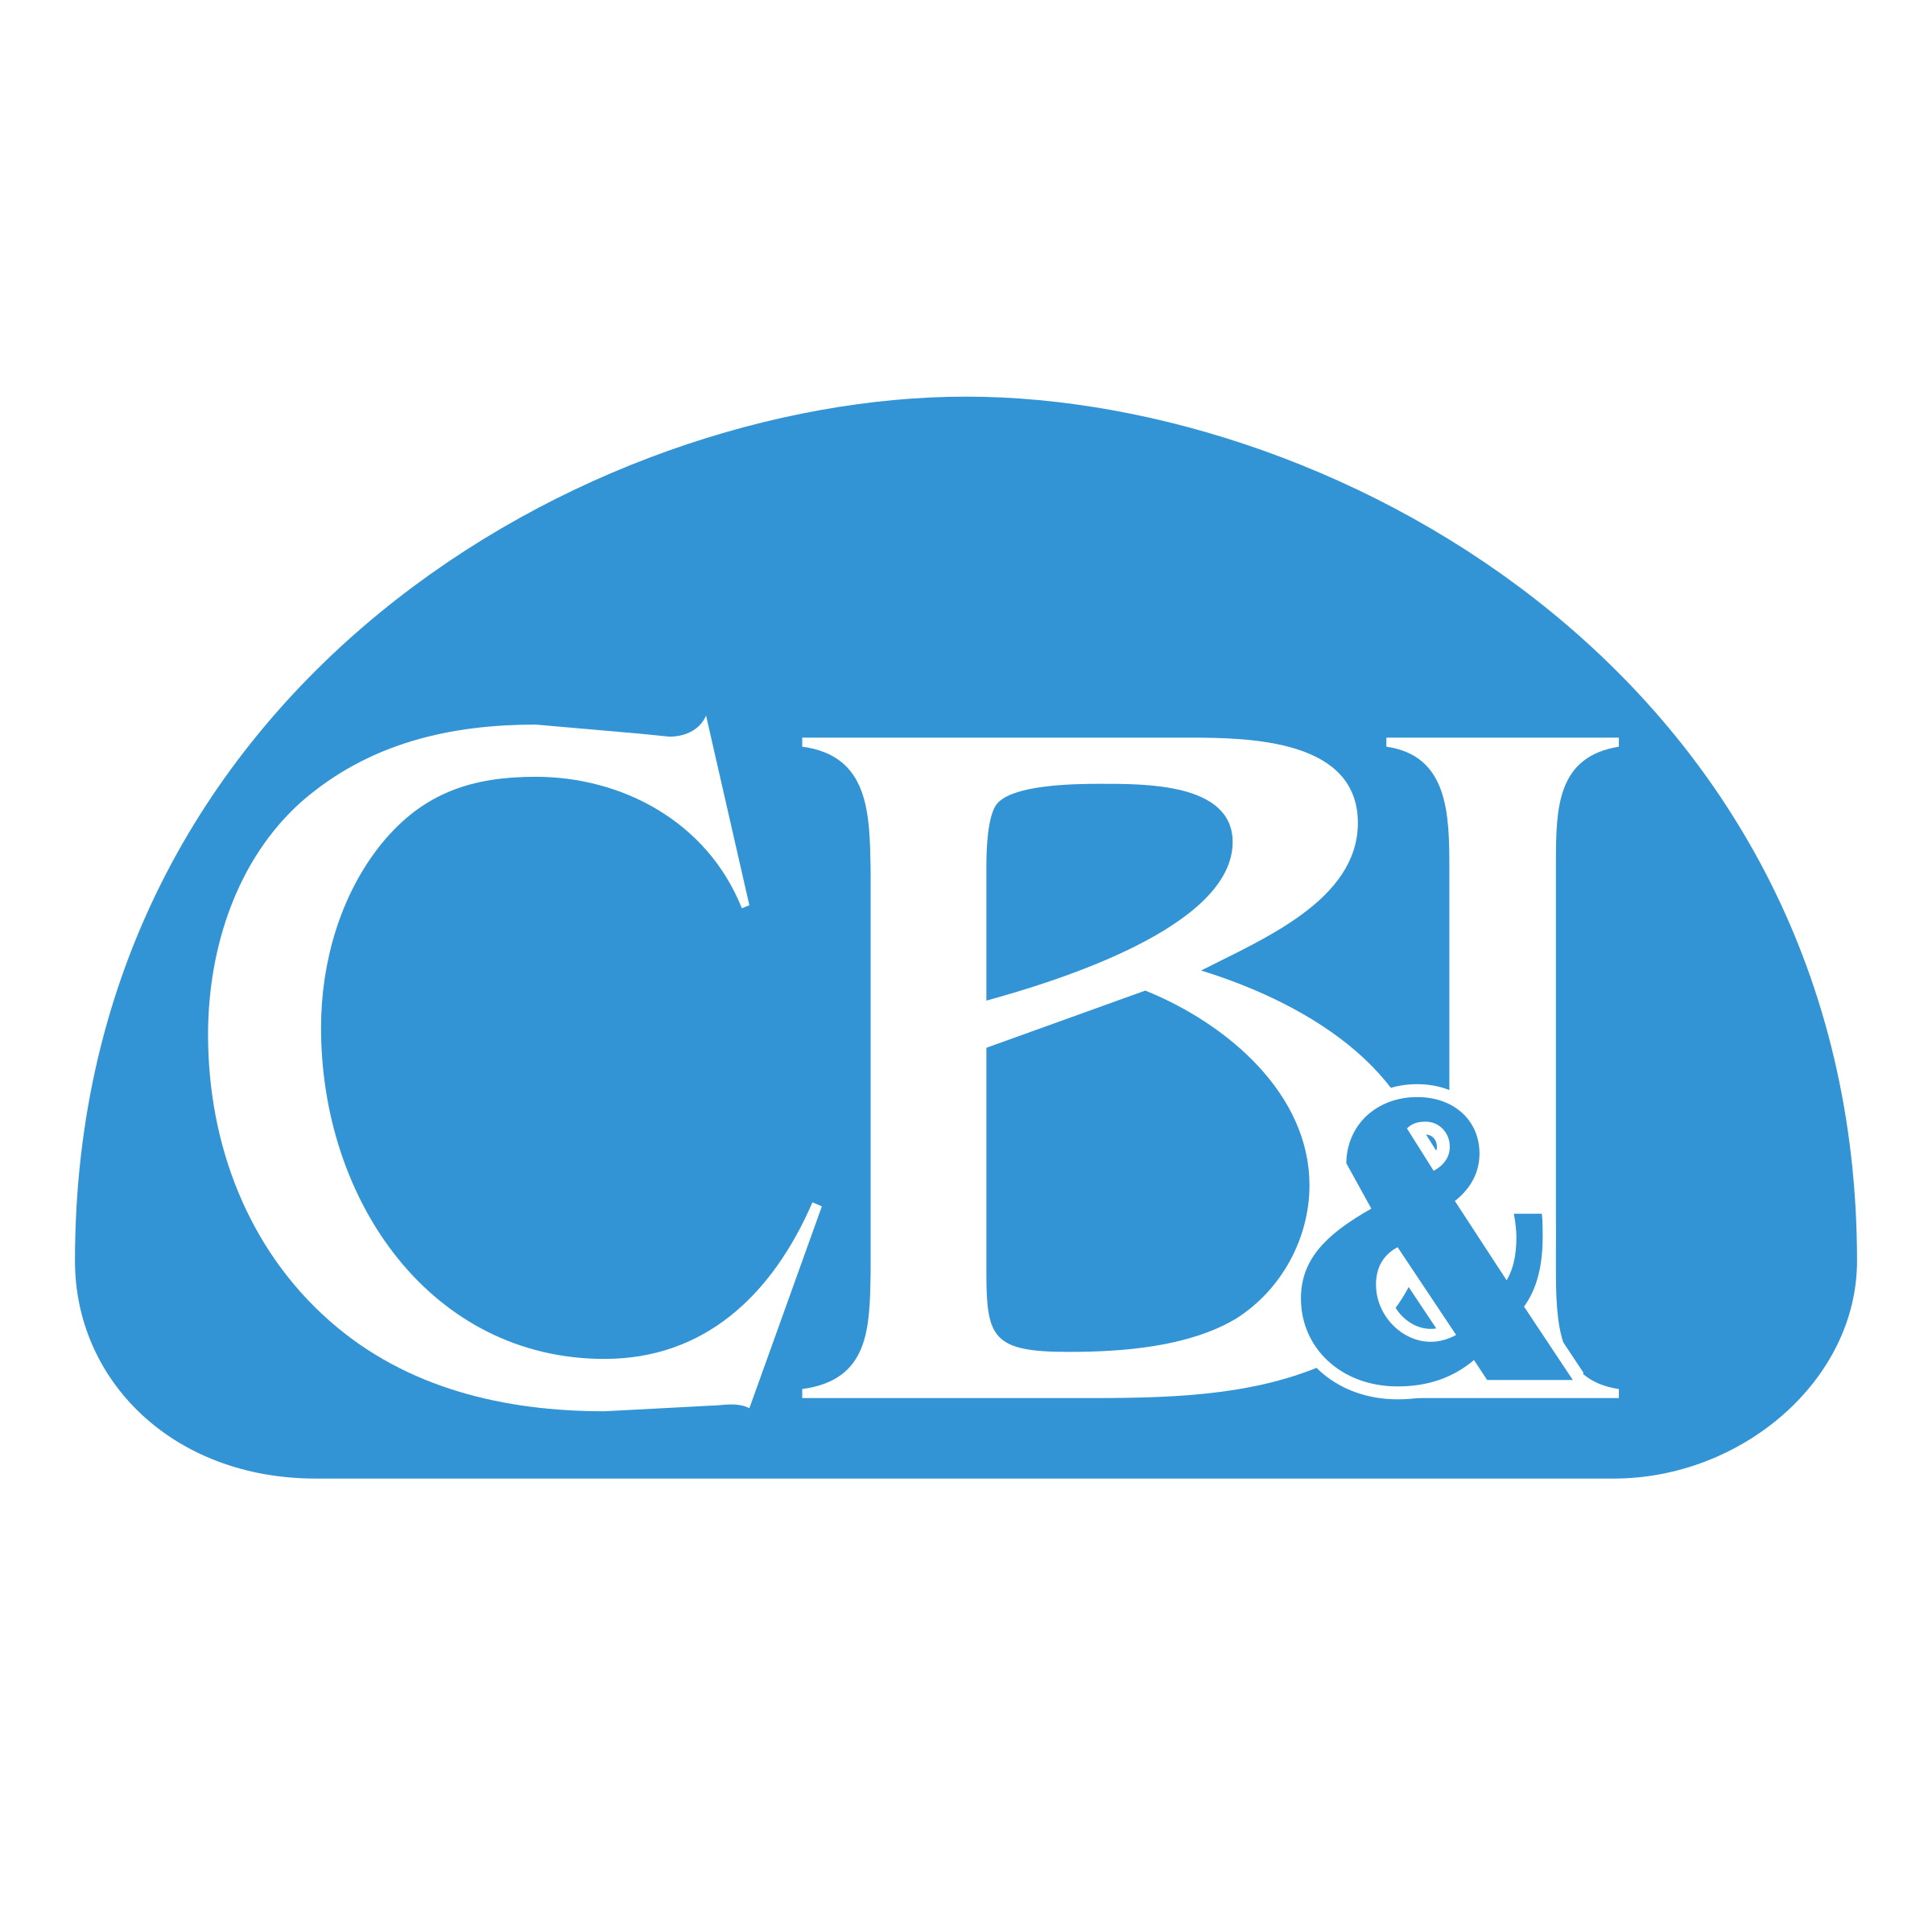 CBI Logo - CBI Logo PNG Transparent & SVG Vector